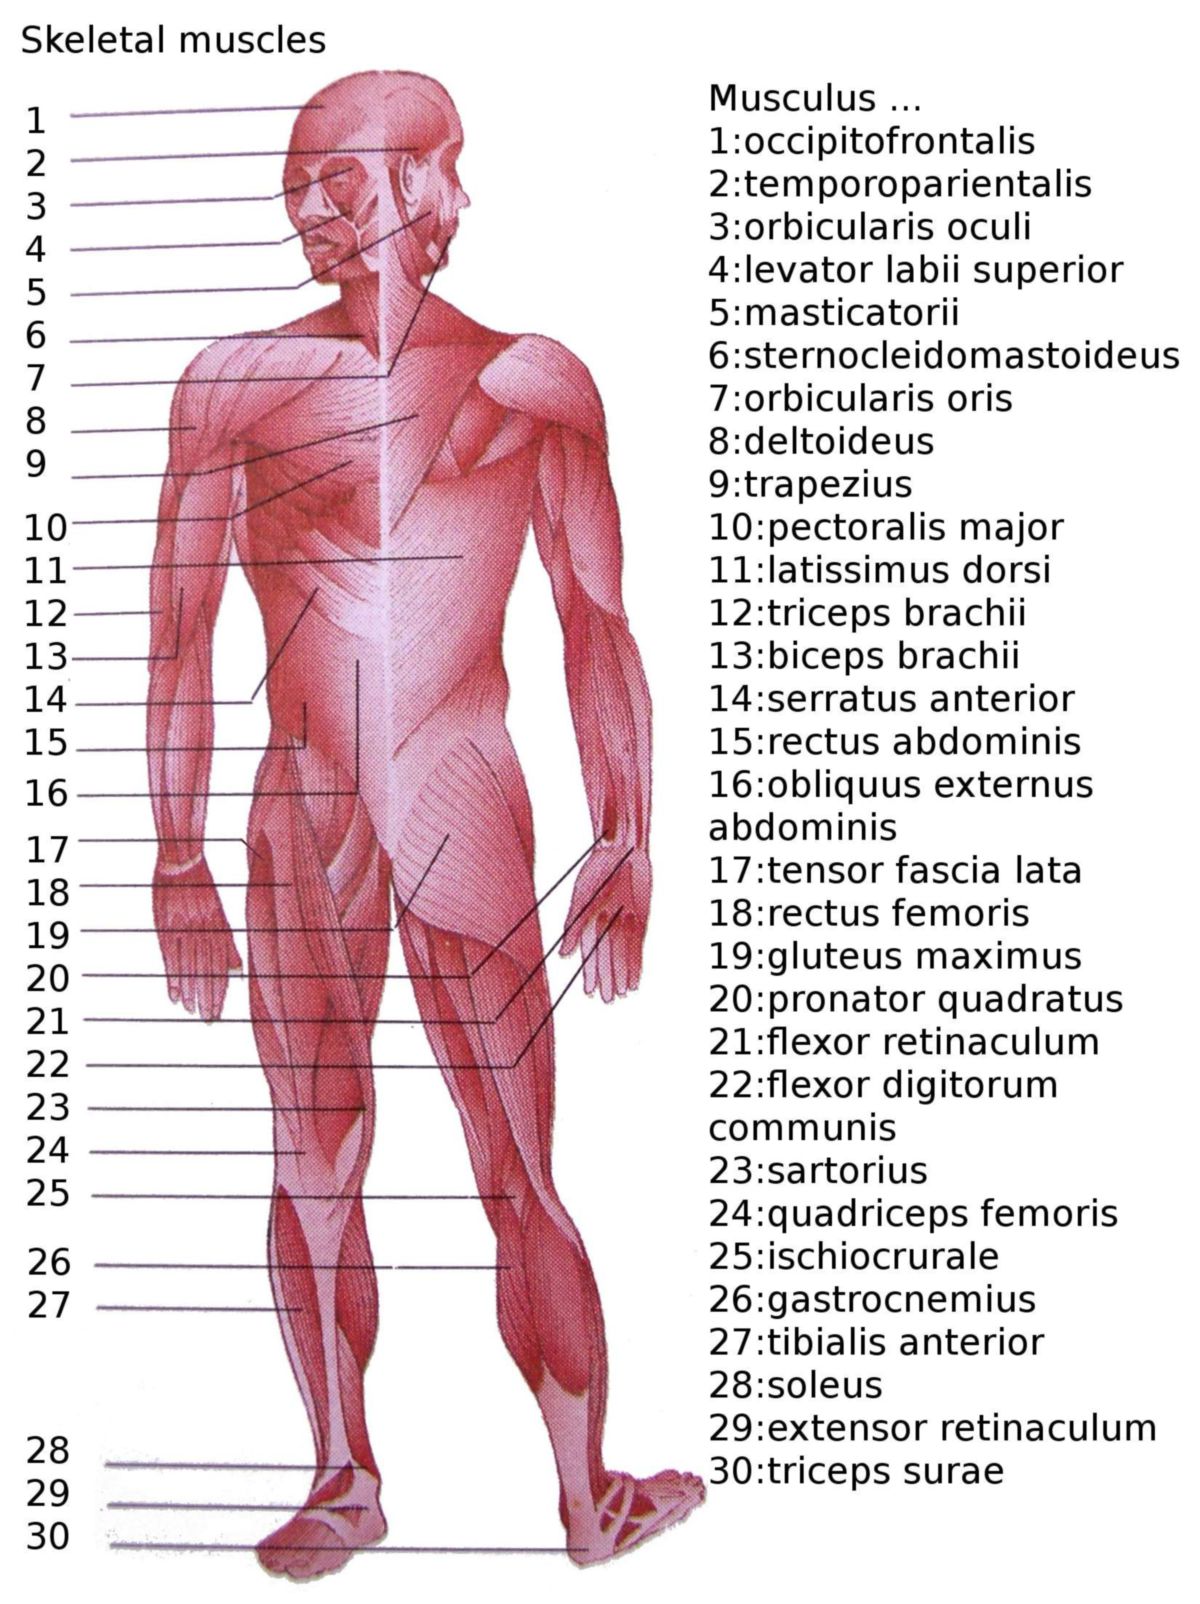 Skelettmuskulatur des Menschen (Übersichtsschema)